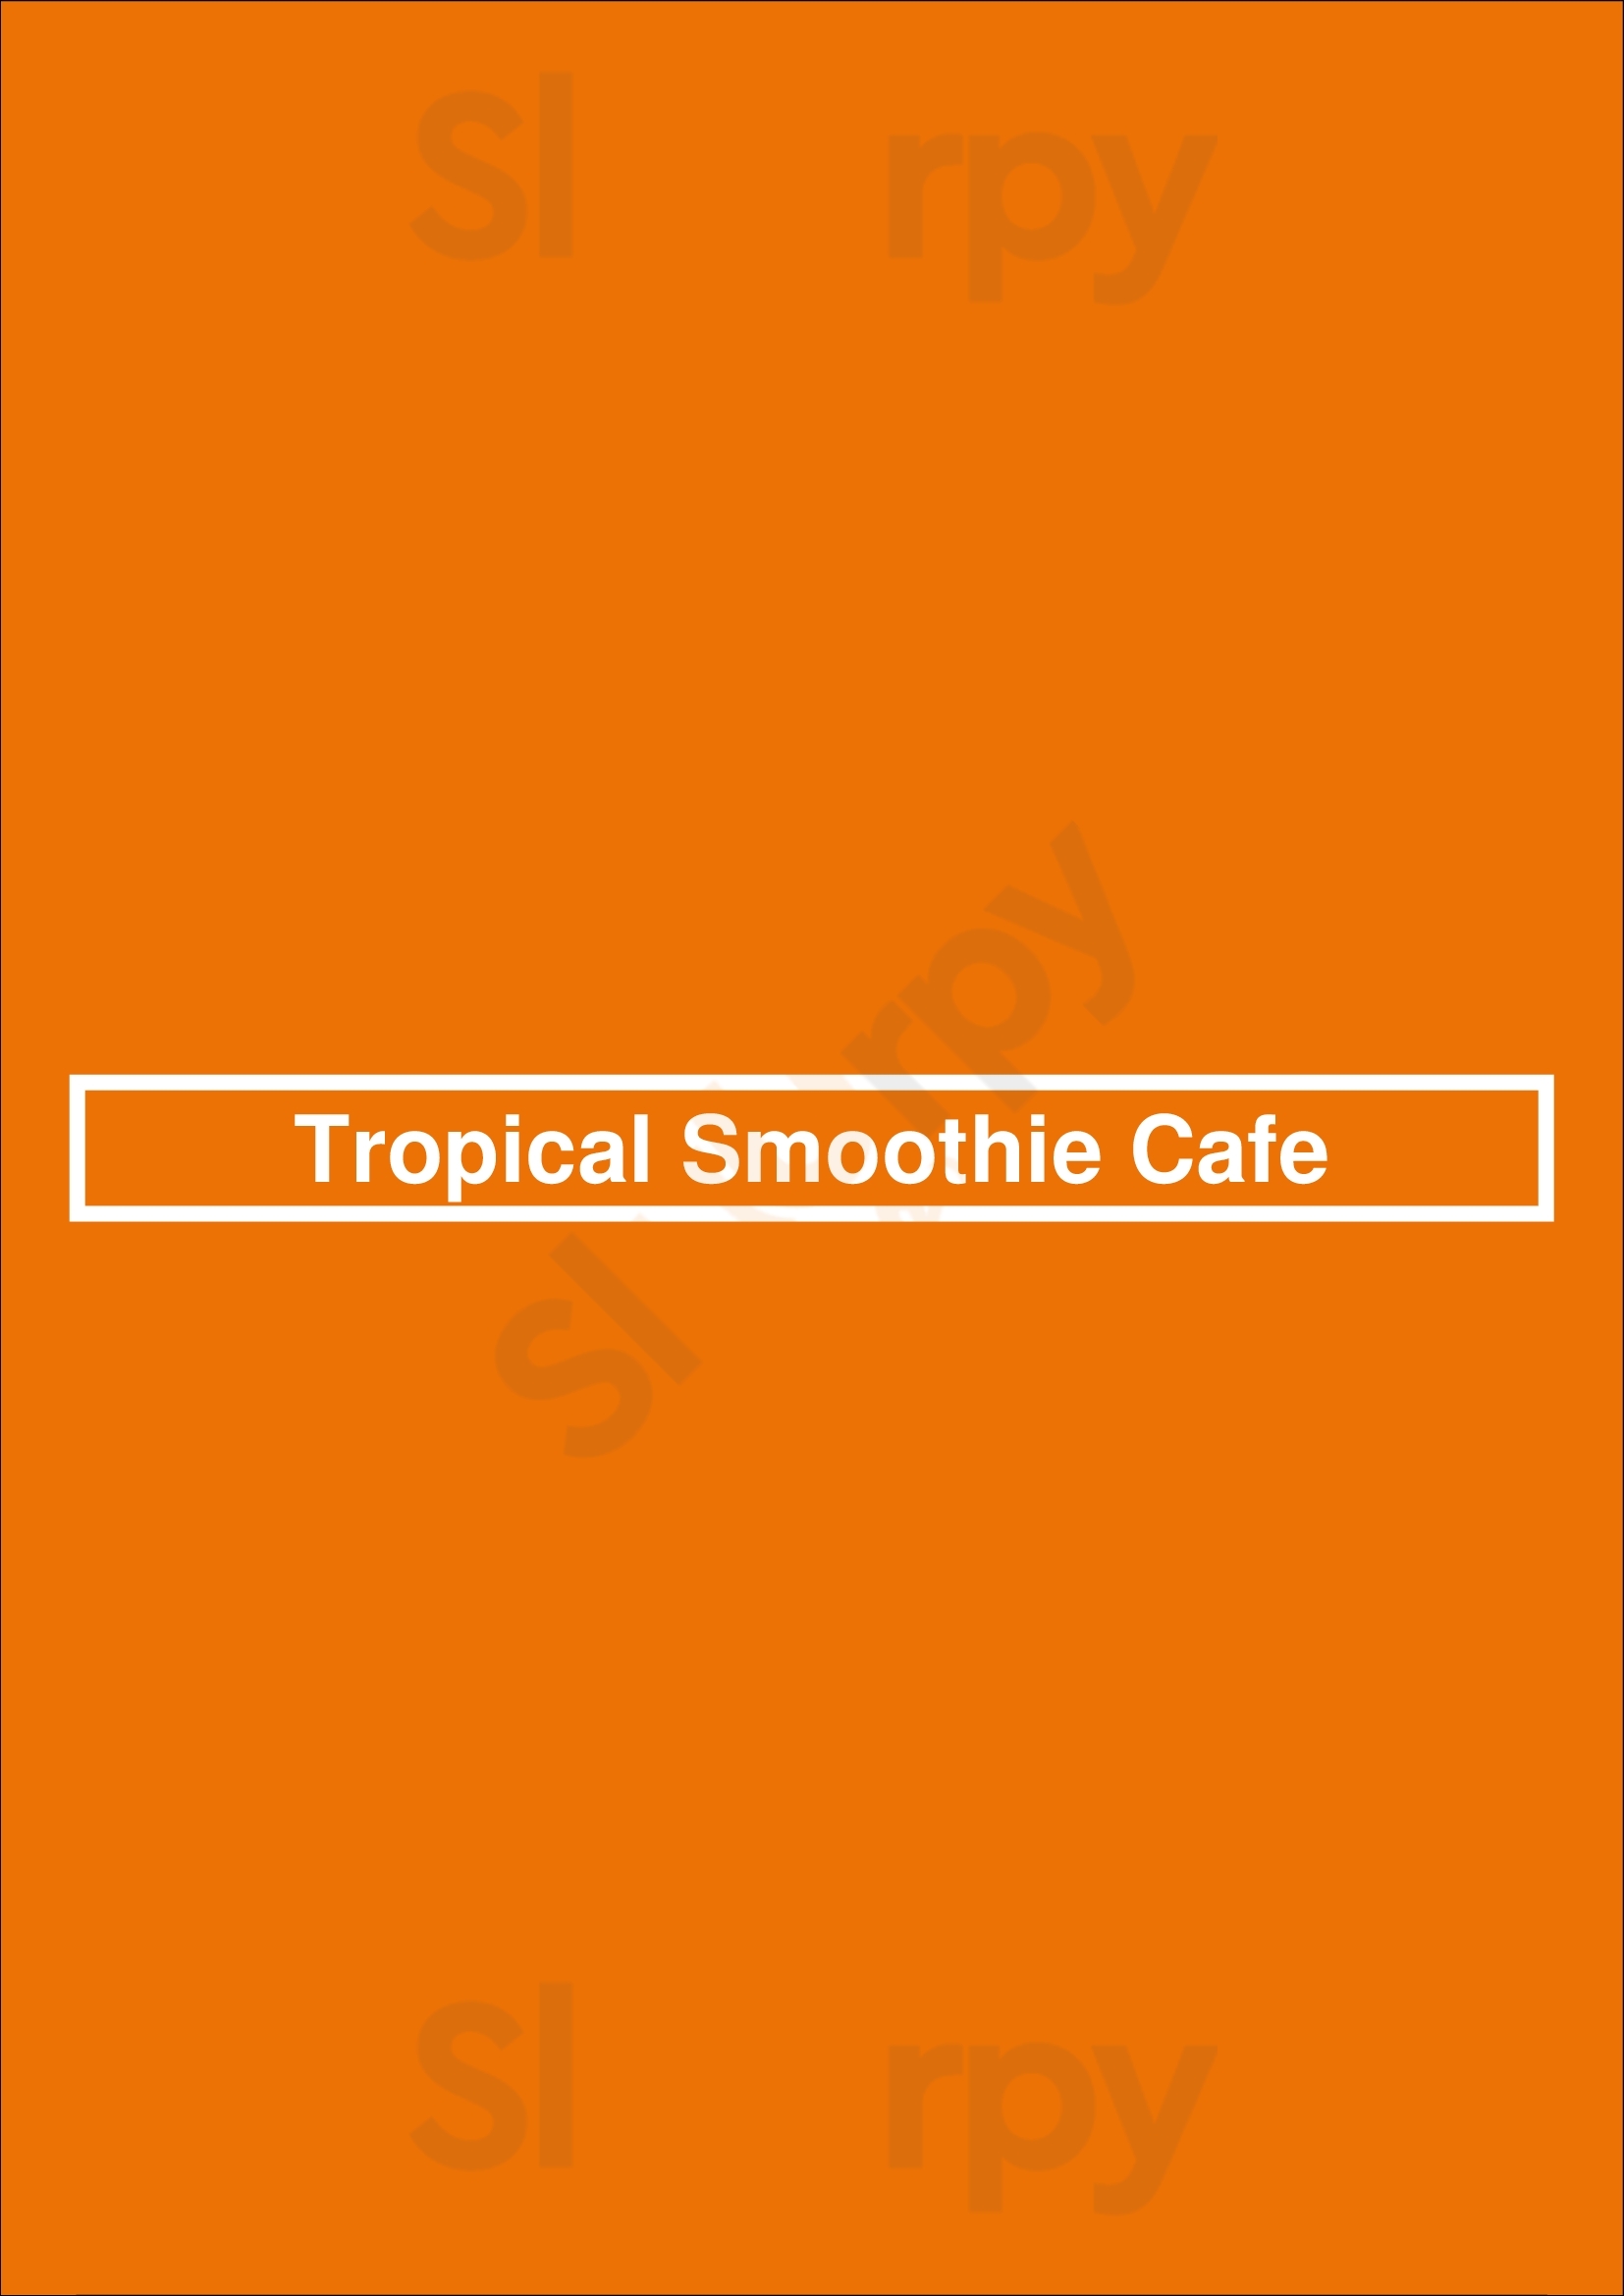 Tropical Smoothie Cafe Tulsa Menu - 1